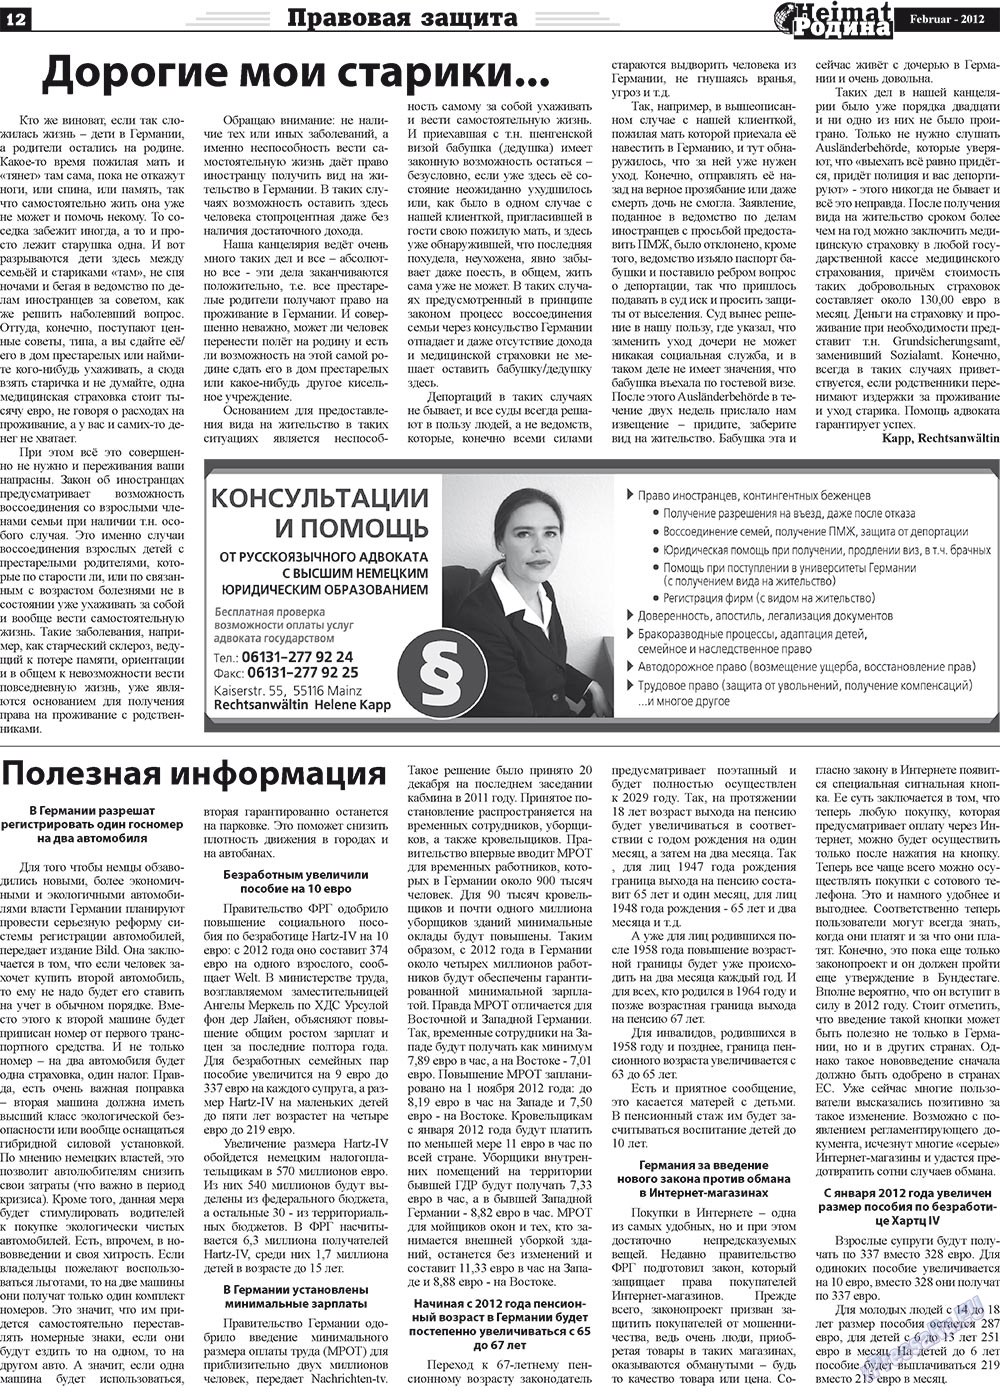 Heimat-Родина (газета). 2012 год, номер 2, стр. 12